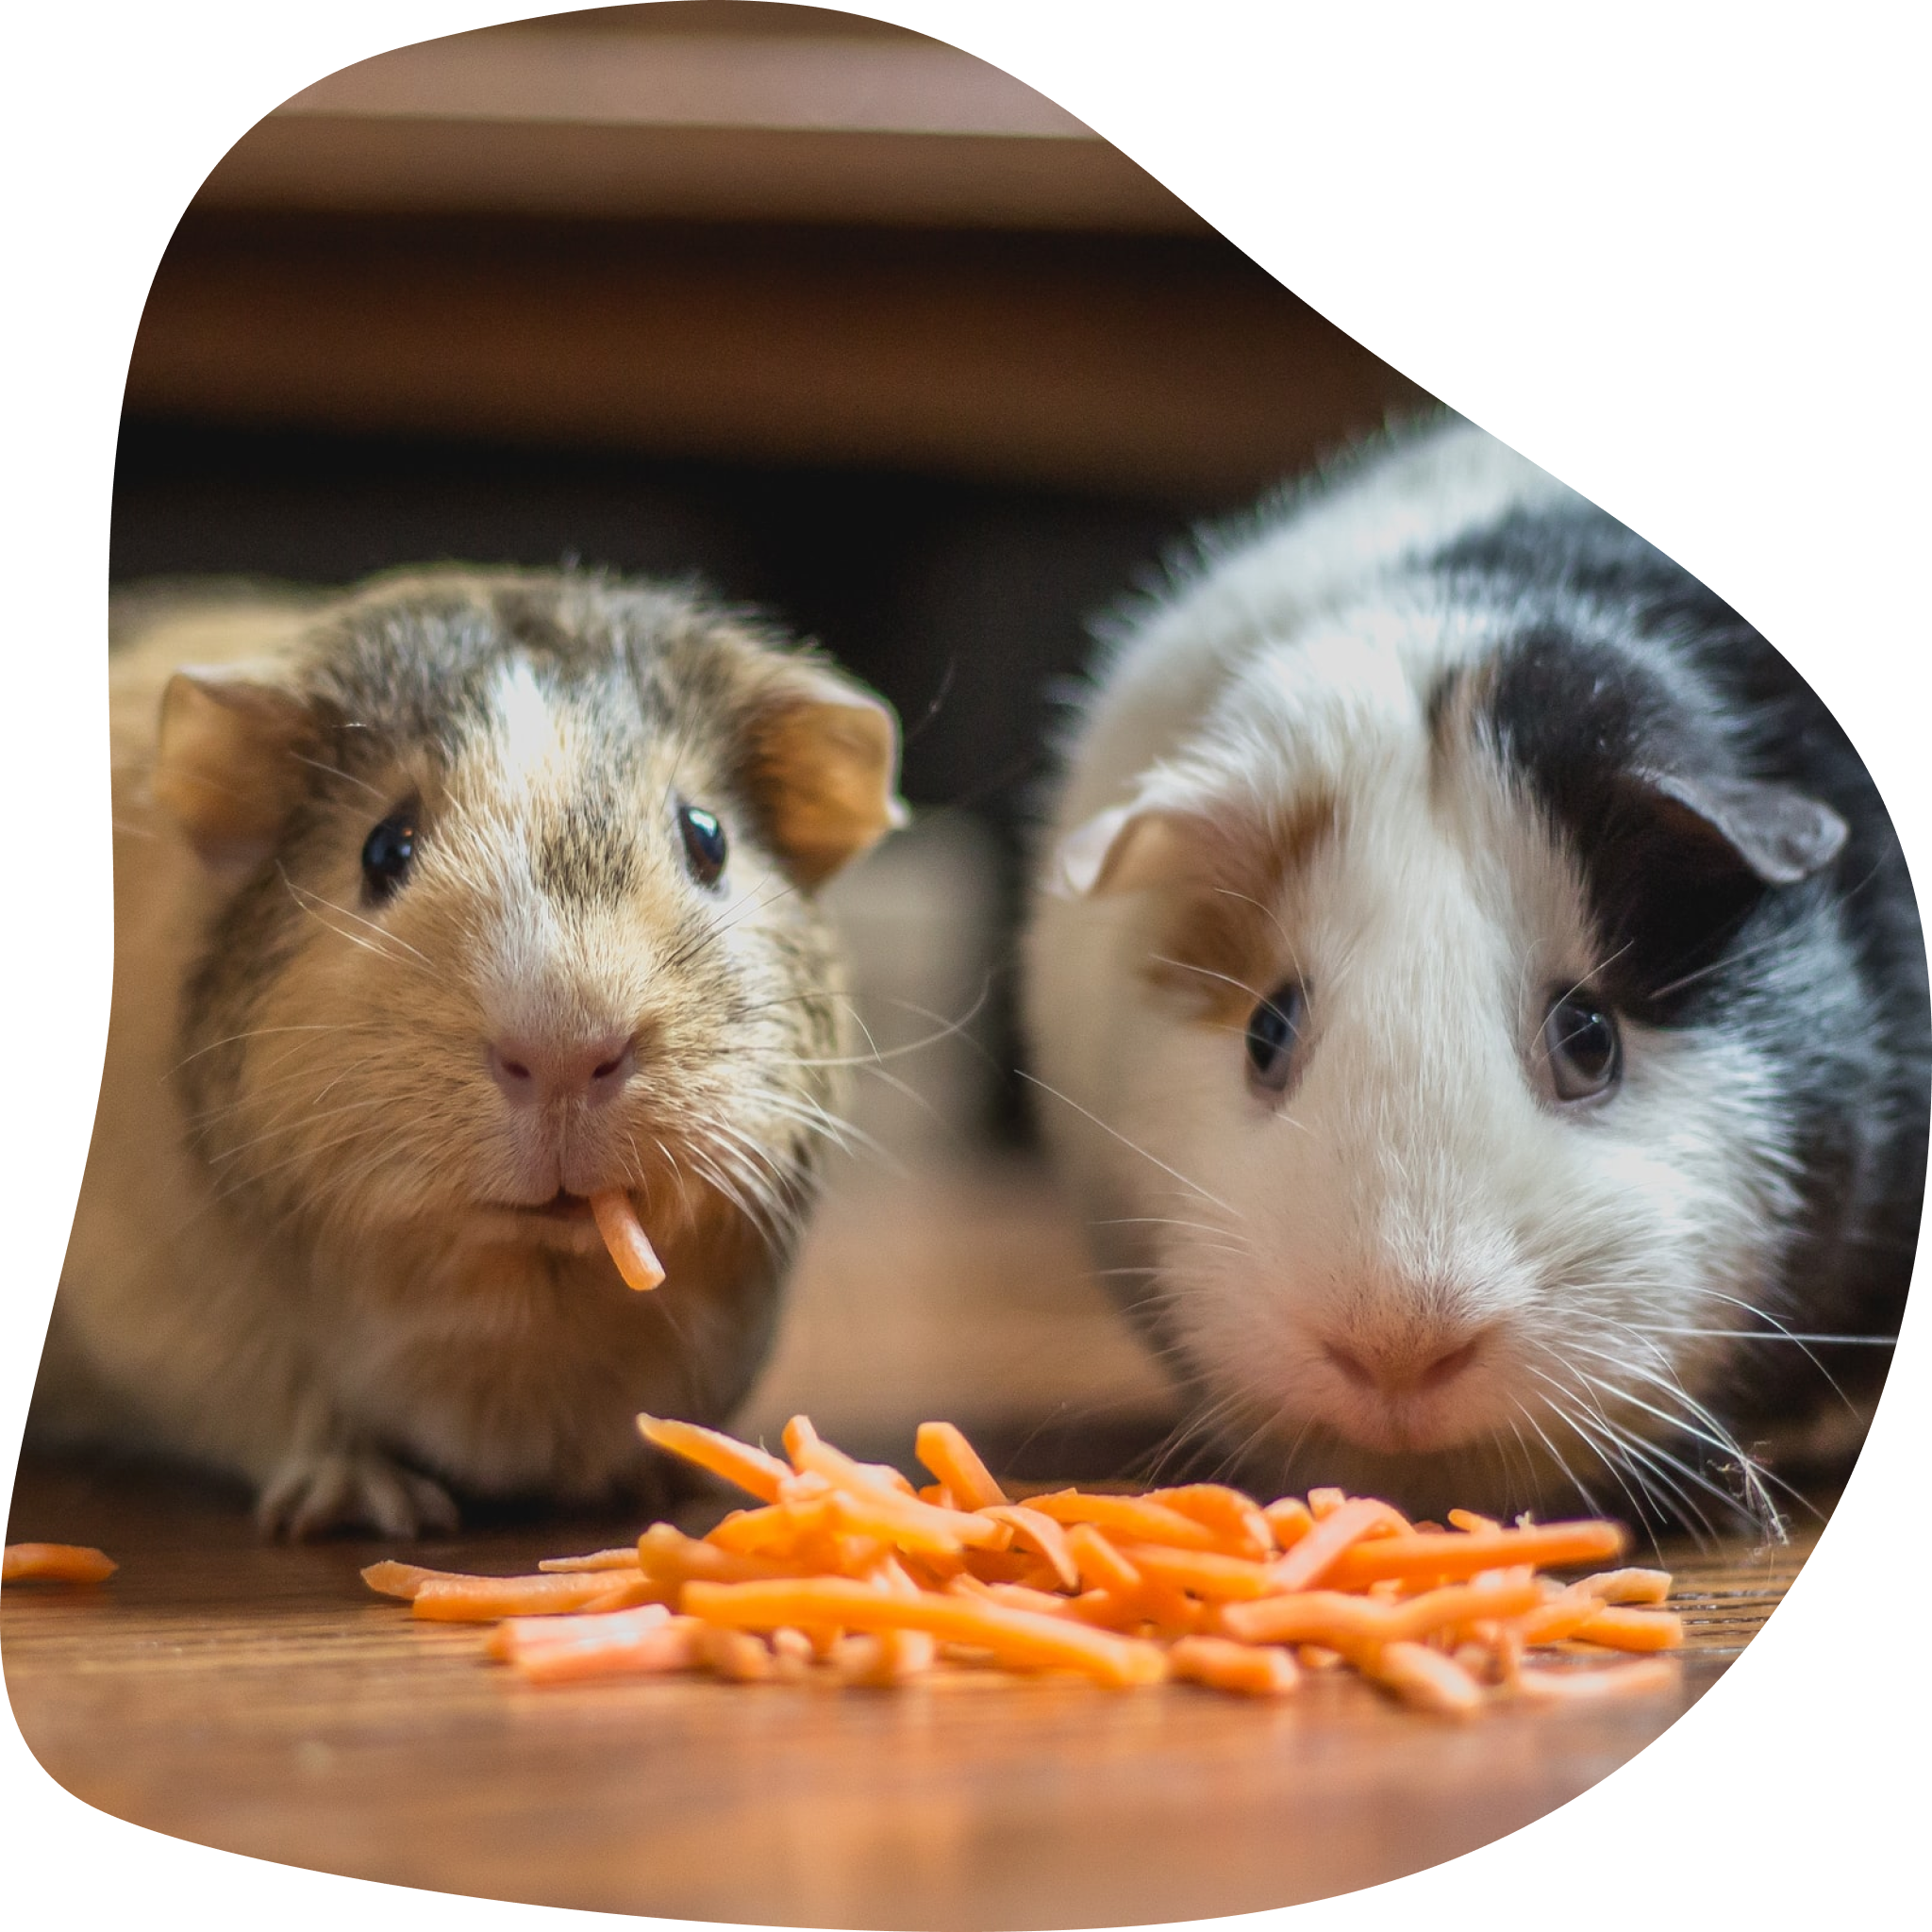 Deux cochons d’indes mangeant de la carotte.